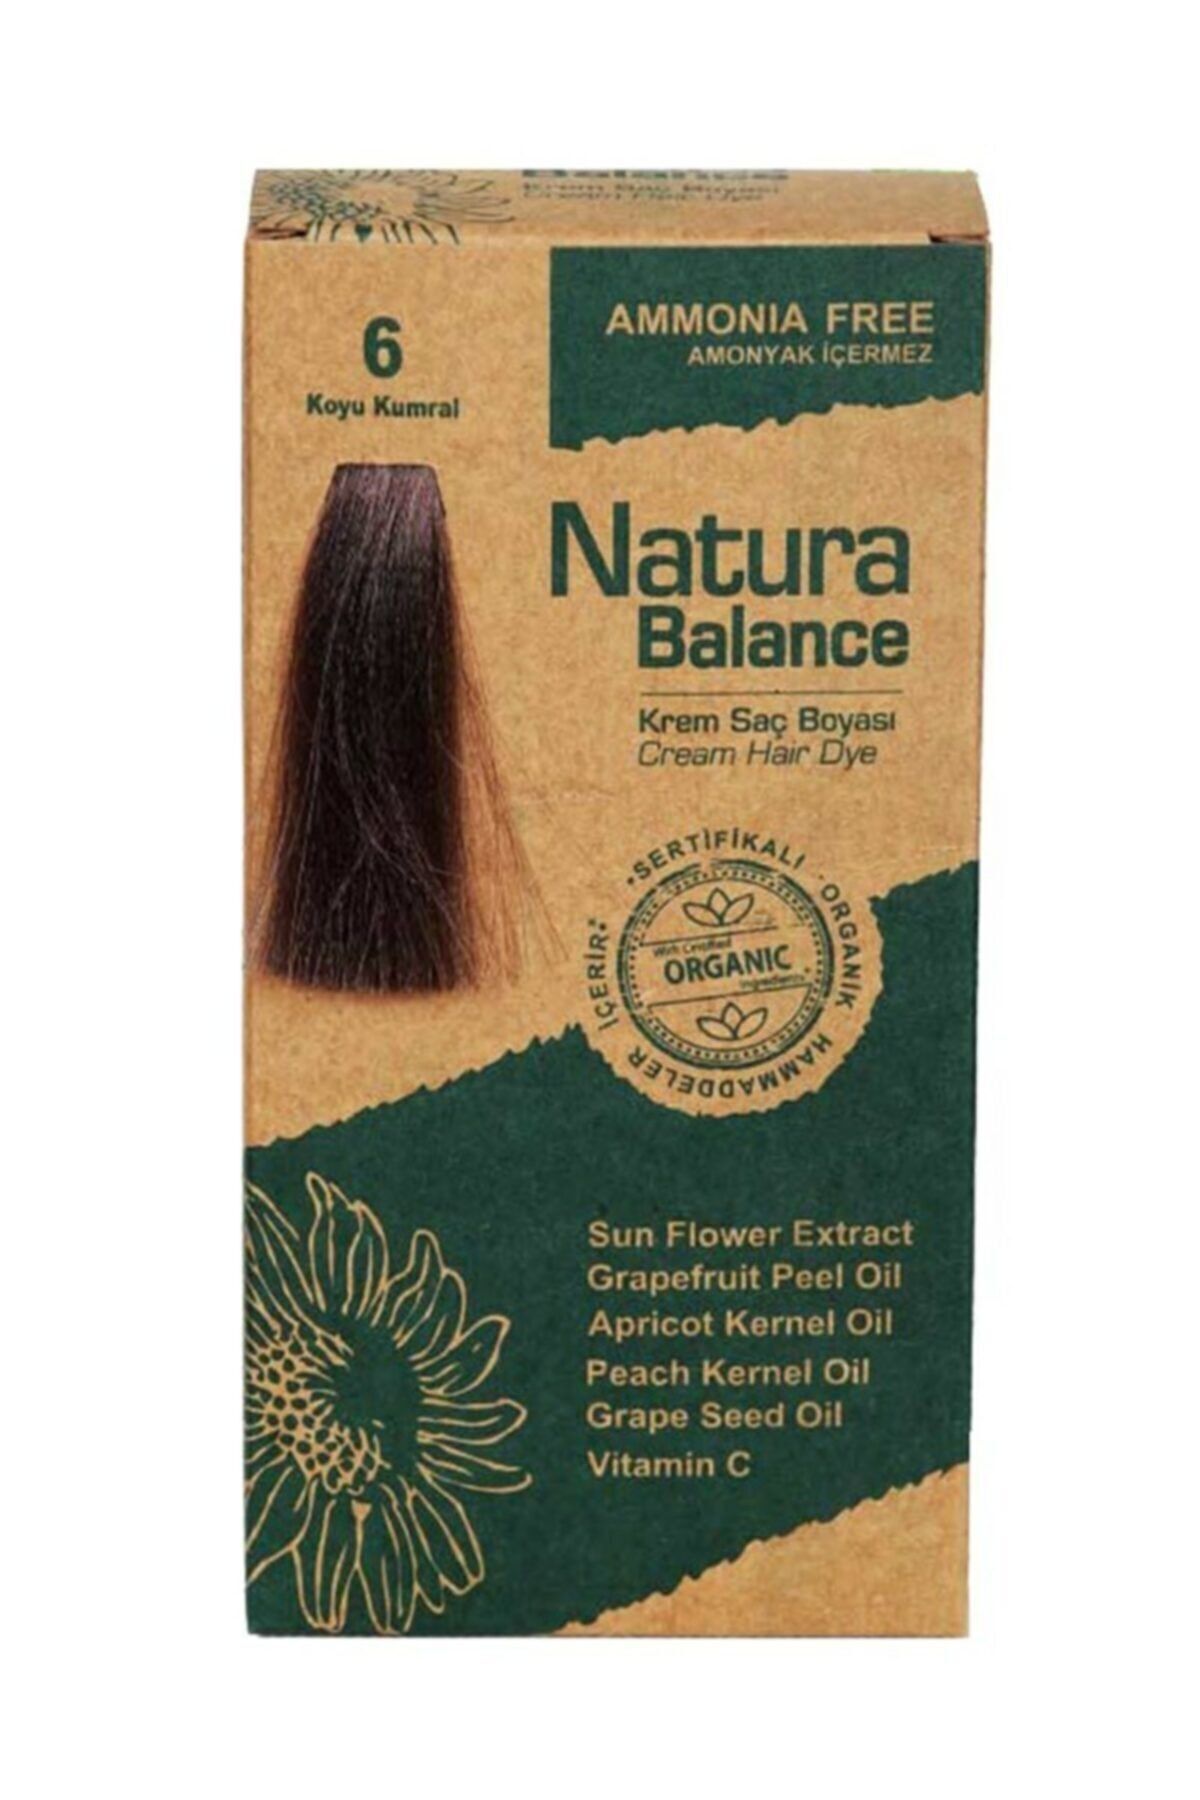 NATURABALANCE Natura Balance Organıc Saç Boyası 6 Koyu Kumral